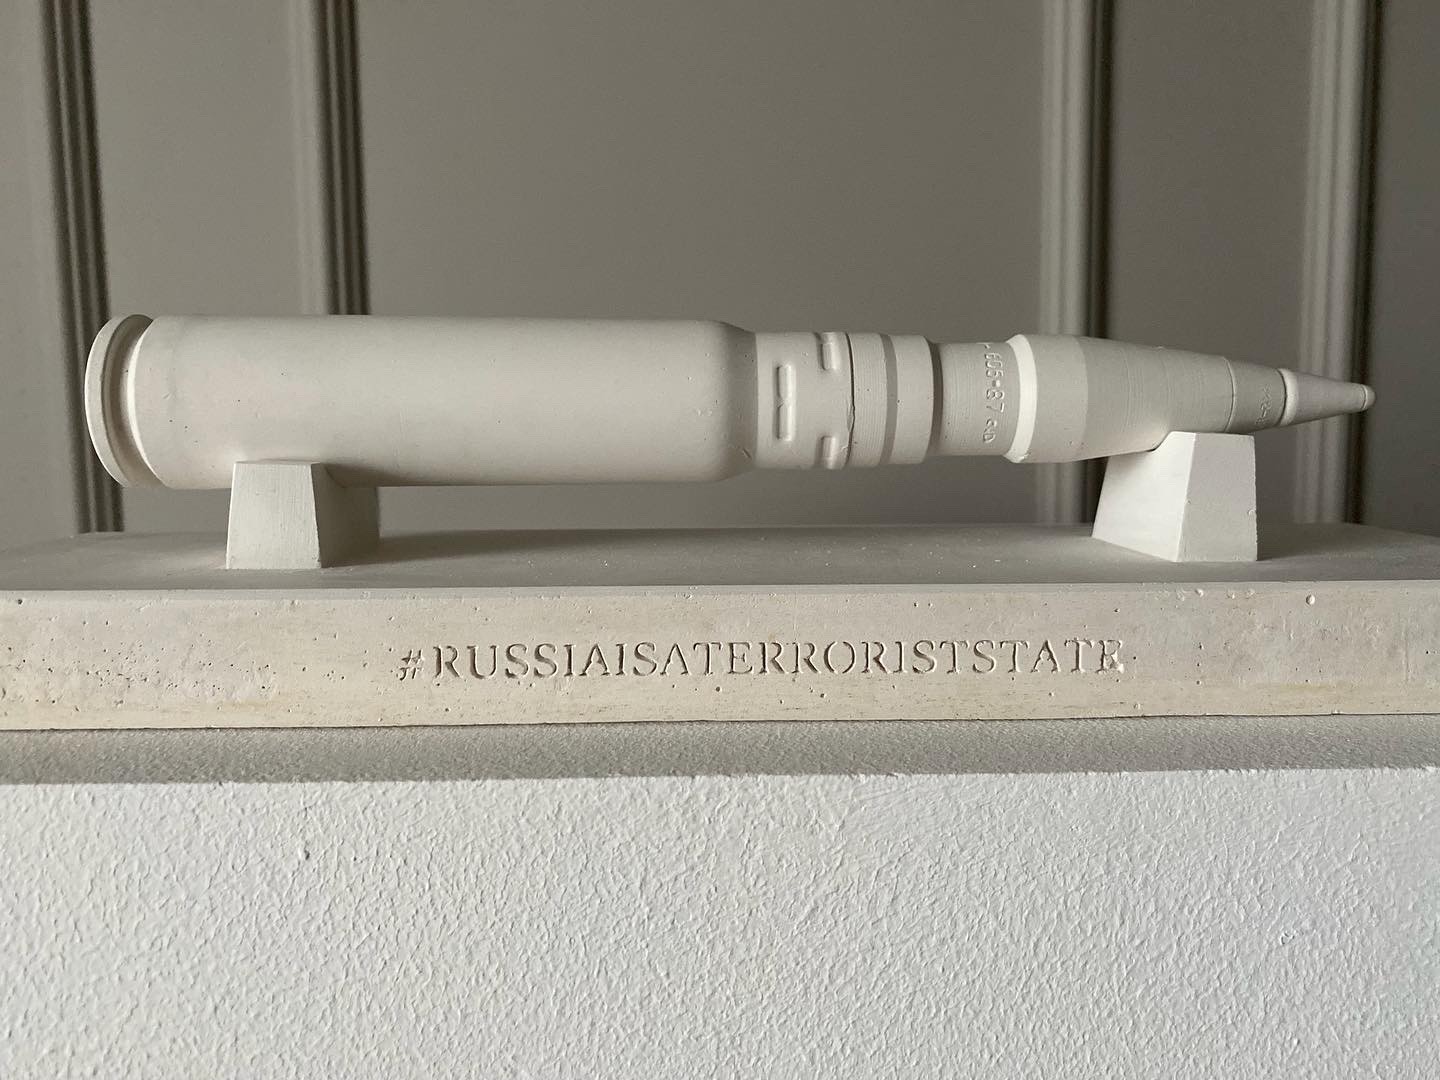 Plaster sculpture #RUSSIAISATERRORISTSTATE